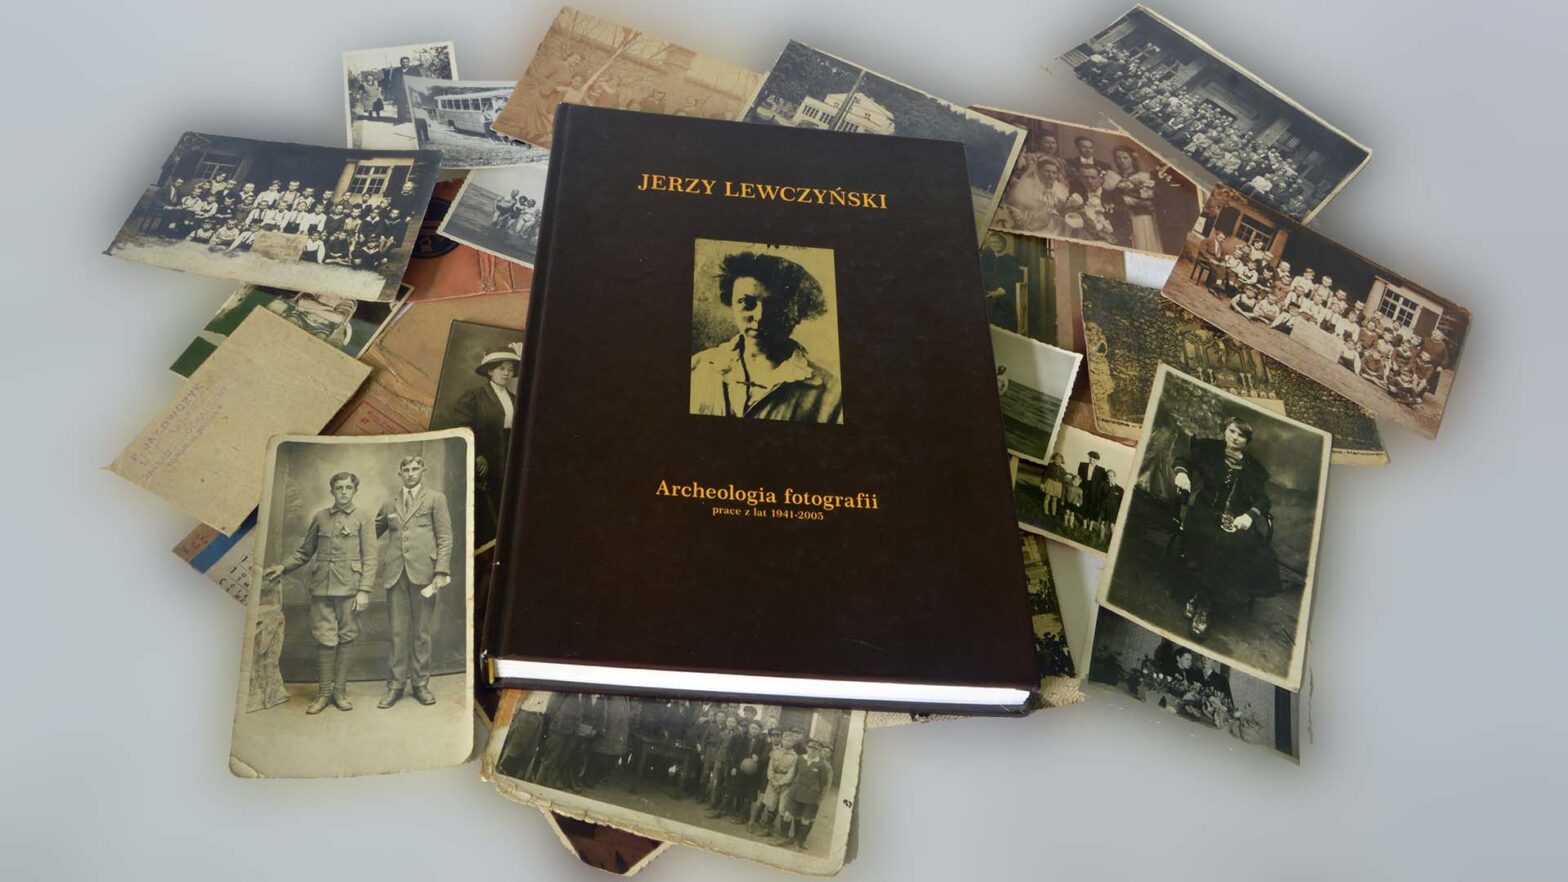 Stare zdjęcia rozrzucone na stole, na których leży książka Archeologia fotografii Jerzego Lewczyńskiego.